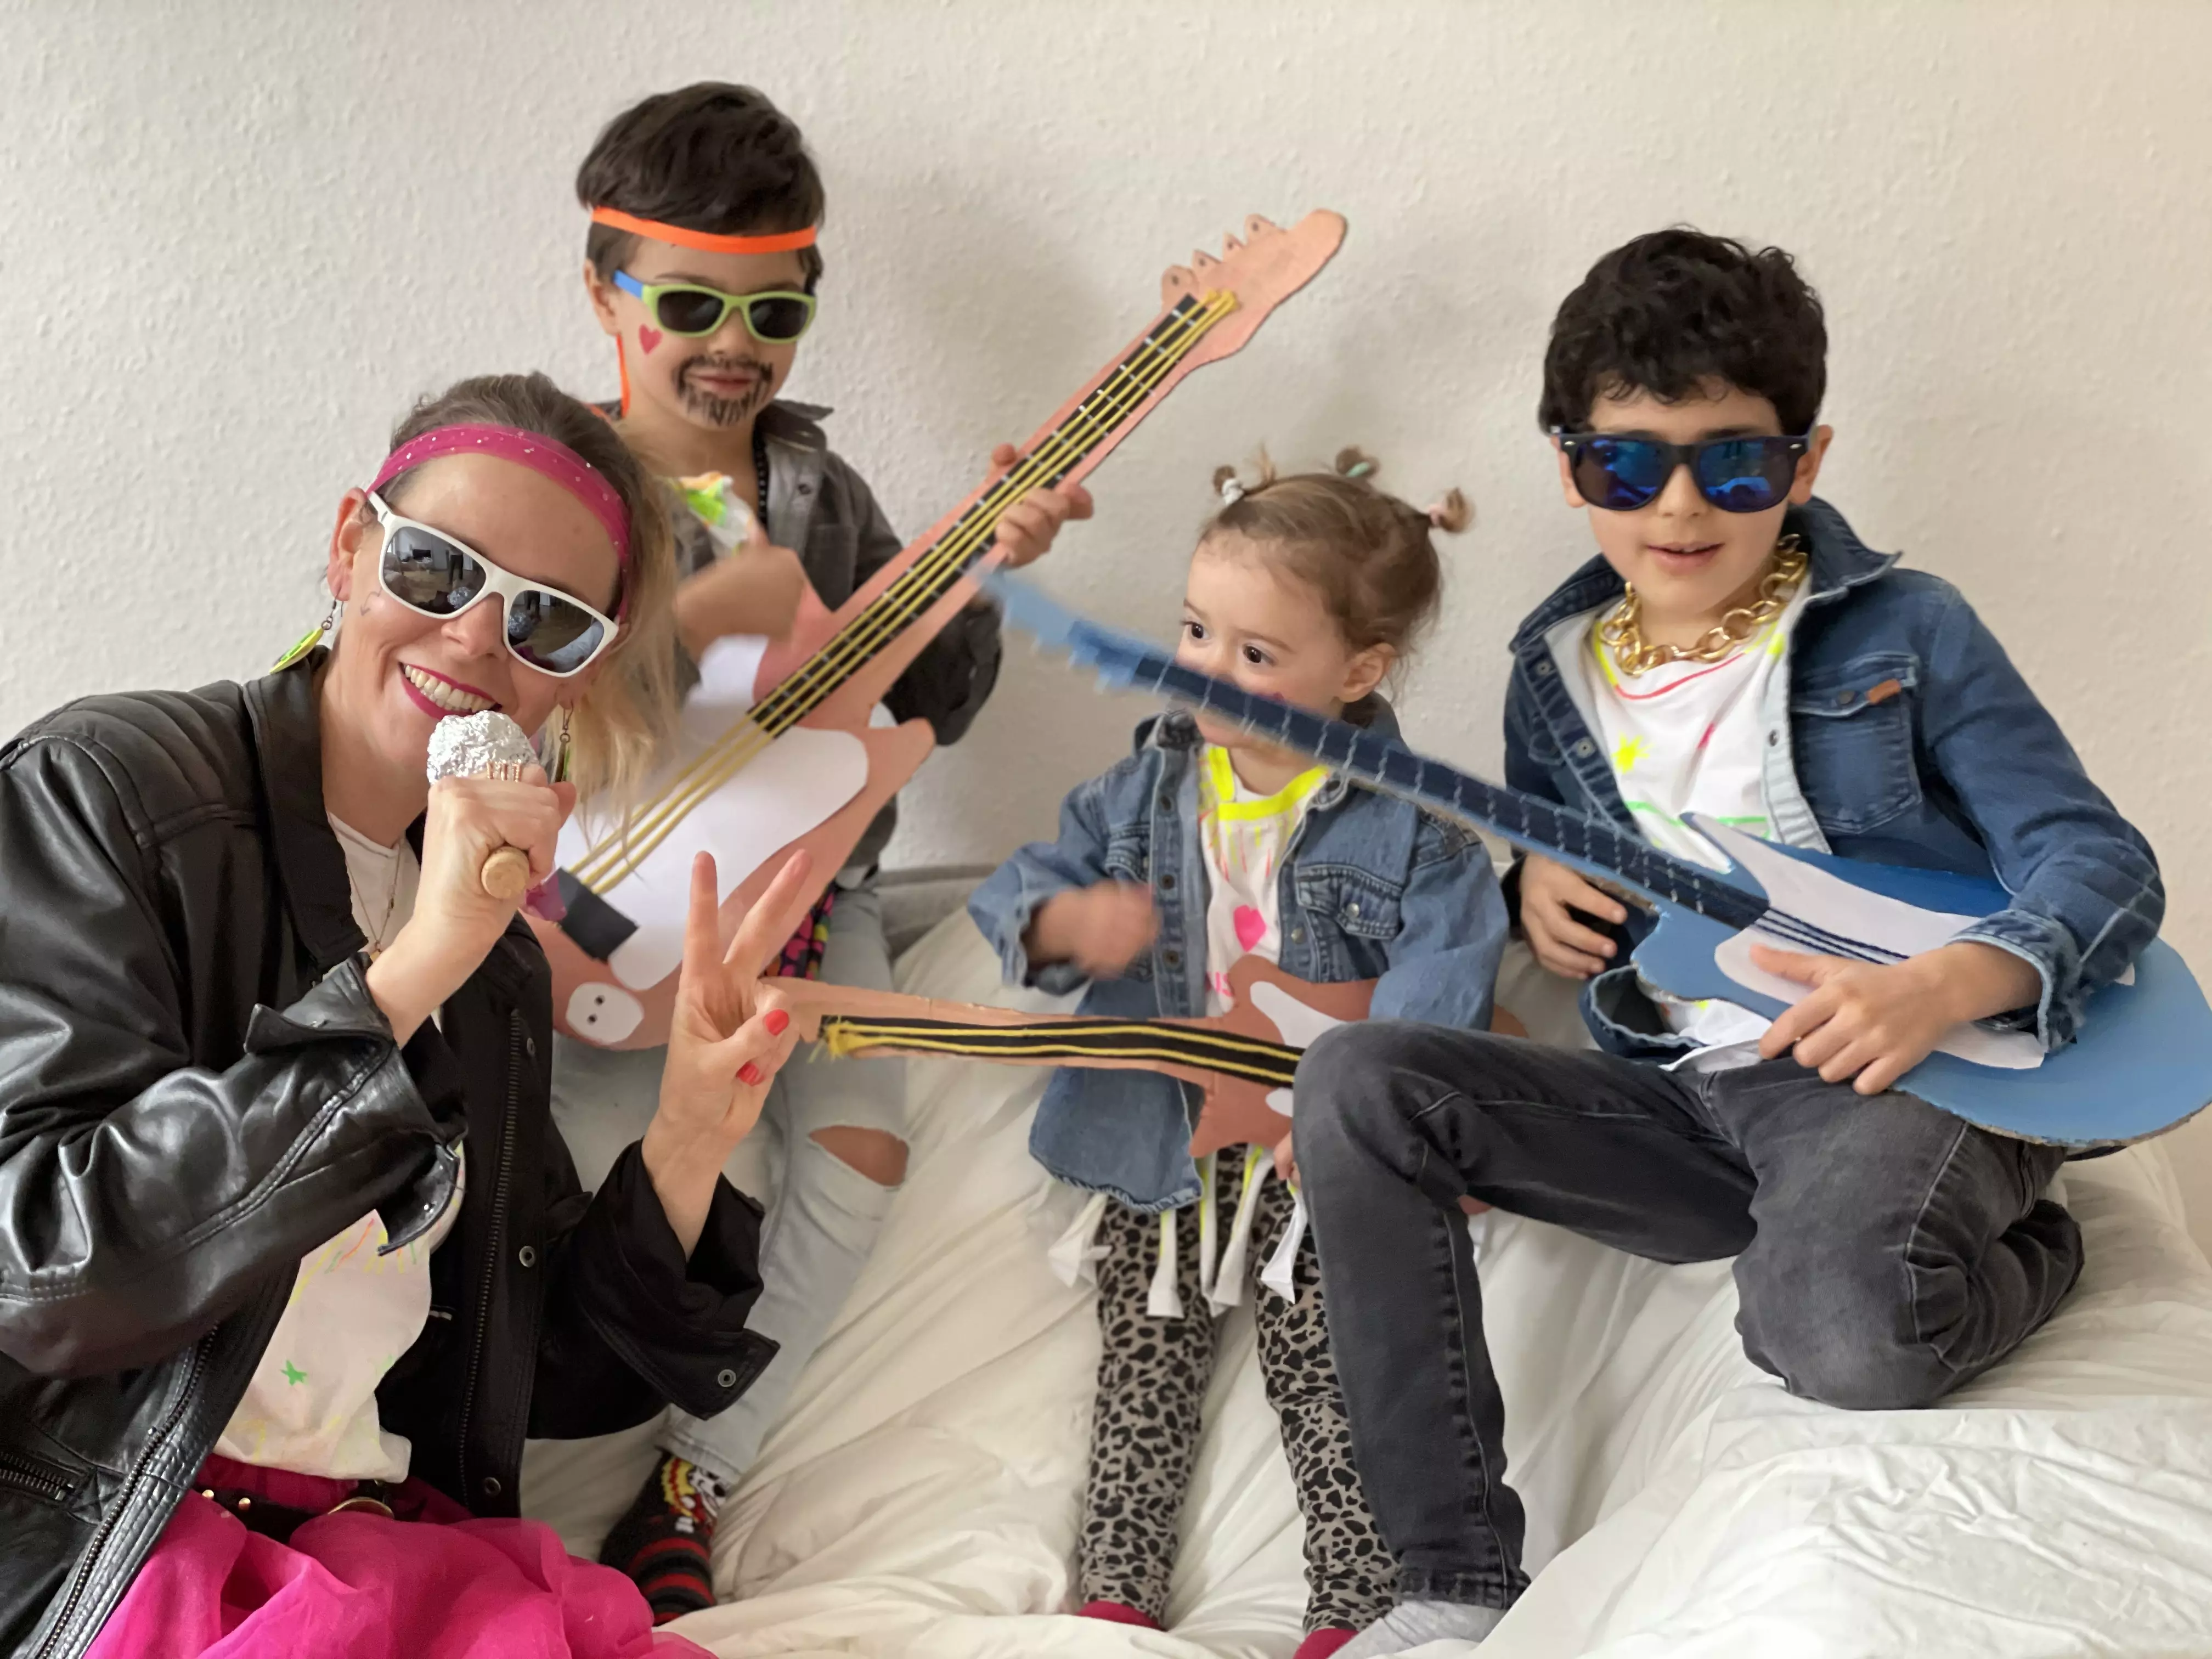 Eine Mama und drei Kinder verkleidet als Rockstars mit Sonnebrillen, Lederjacken, Jeanshemden und Papiergitarren